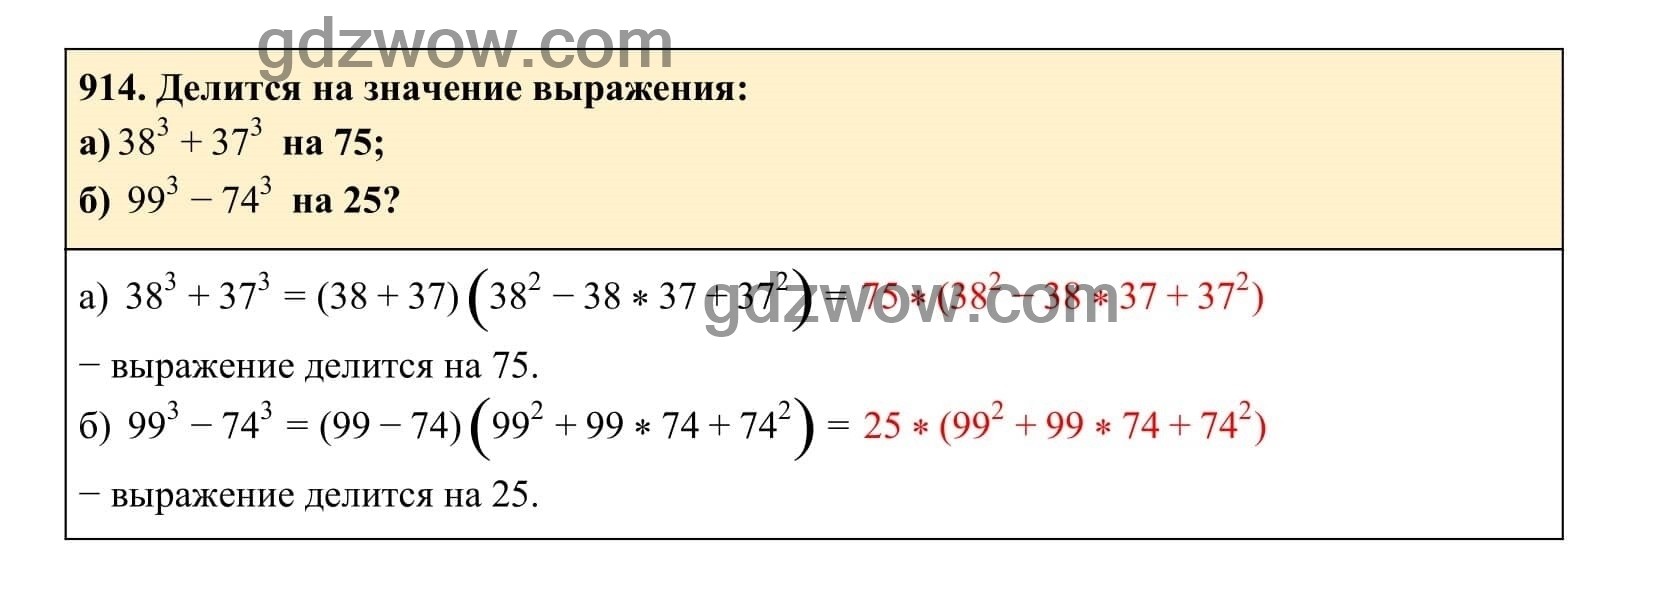 Упражнение 914 - ГДЗ по Алгебре 7 класс Учебник Макарычев (решебник) - GDZwow